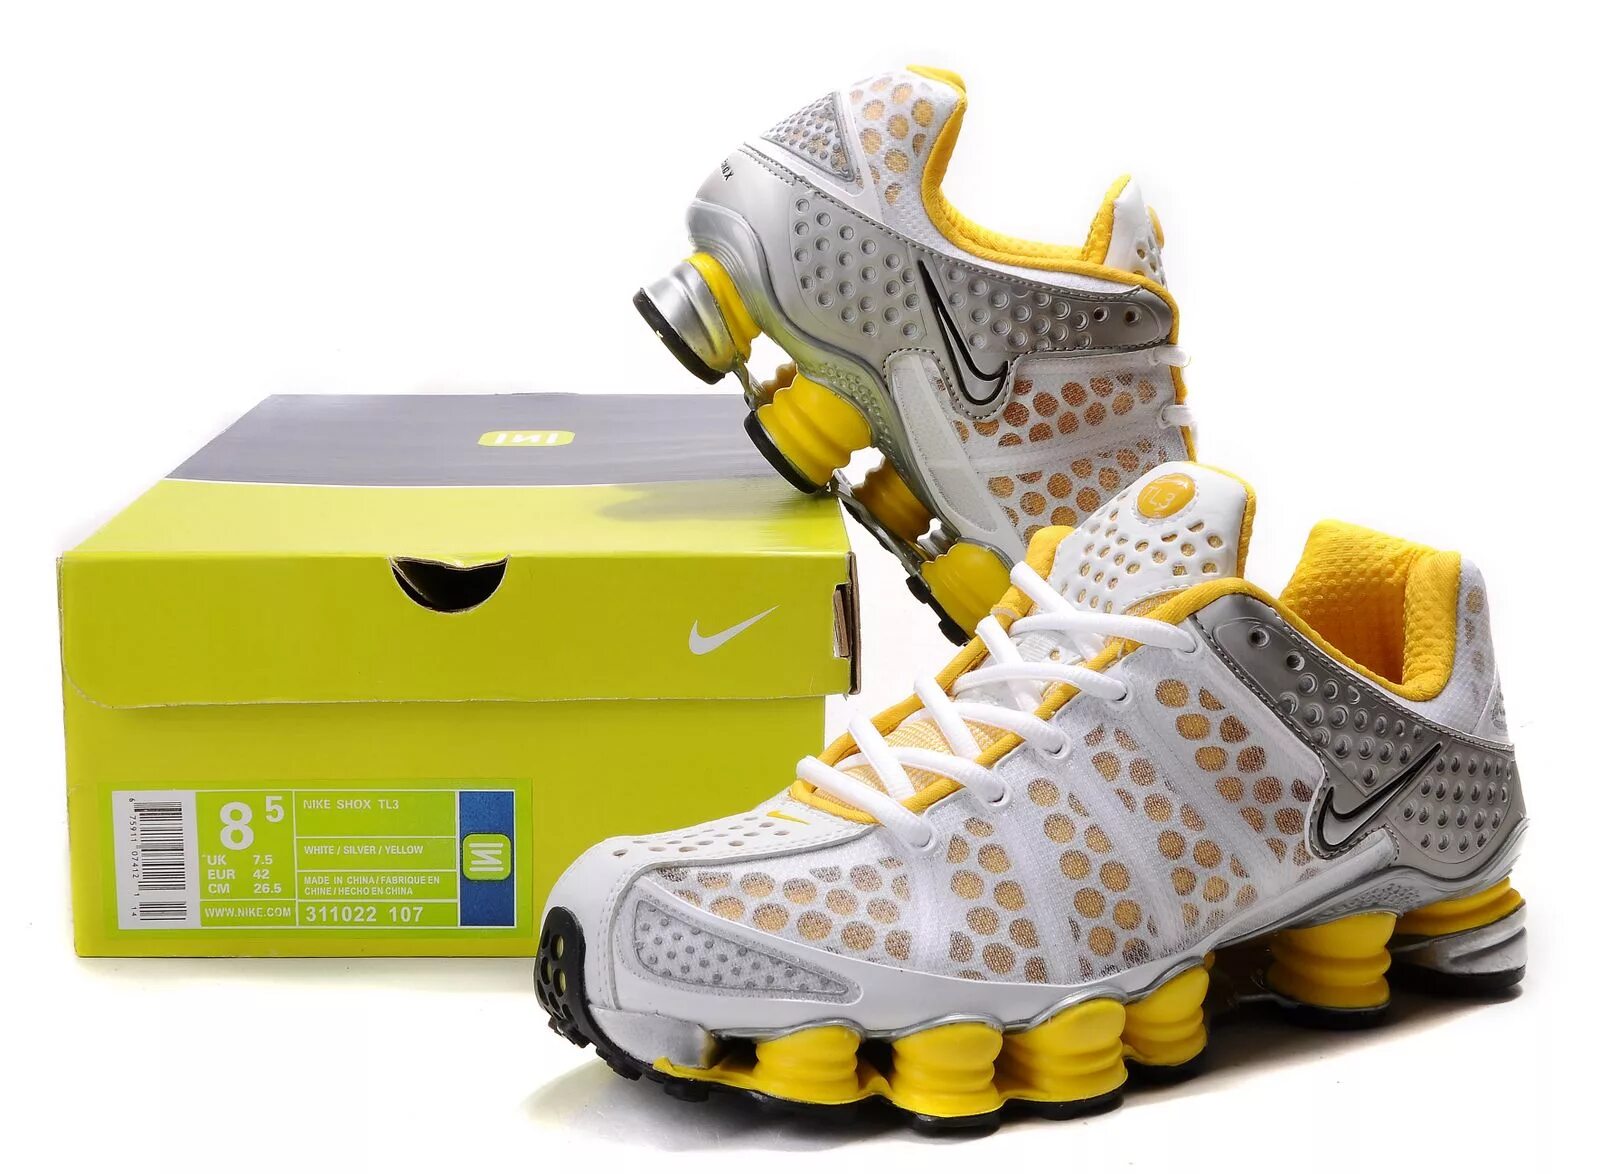 Nike Shox tl3. Nike Shox TL Yellow. Nike Shox 3. Nike Shox в желтой расцветке.